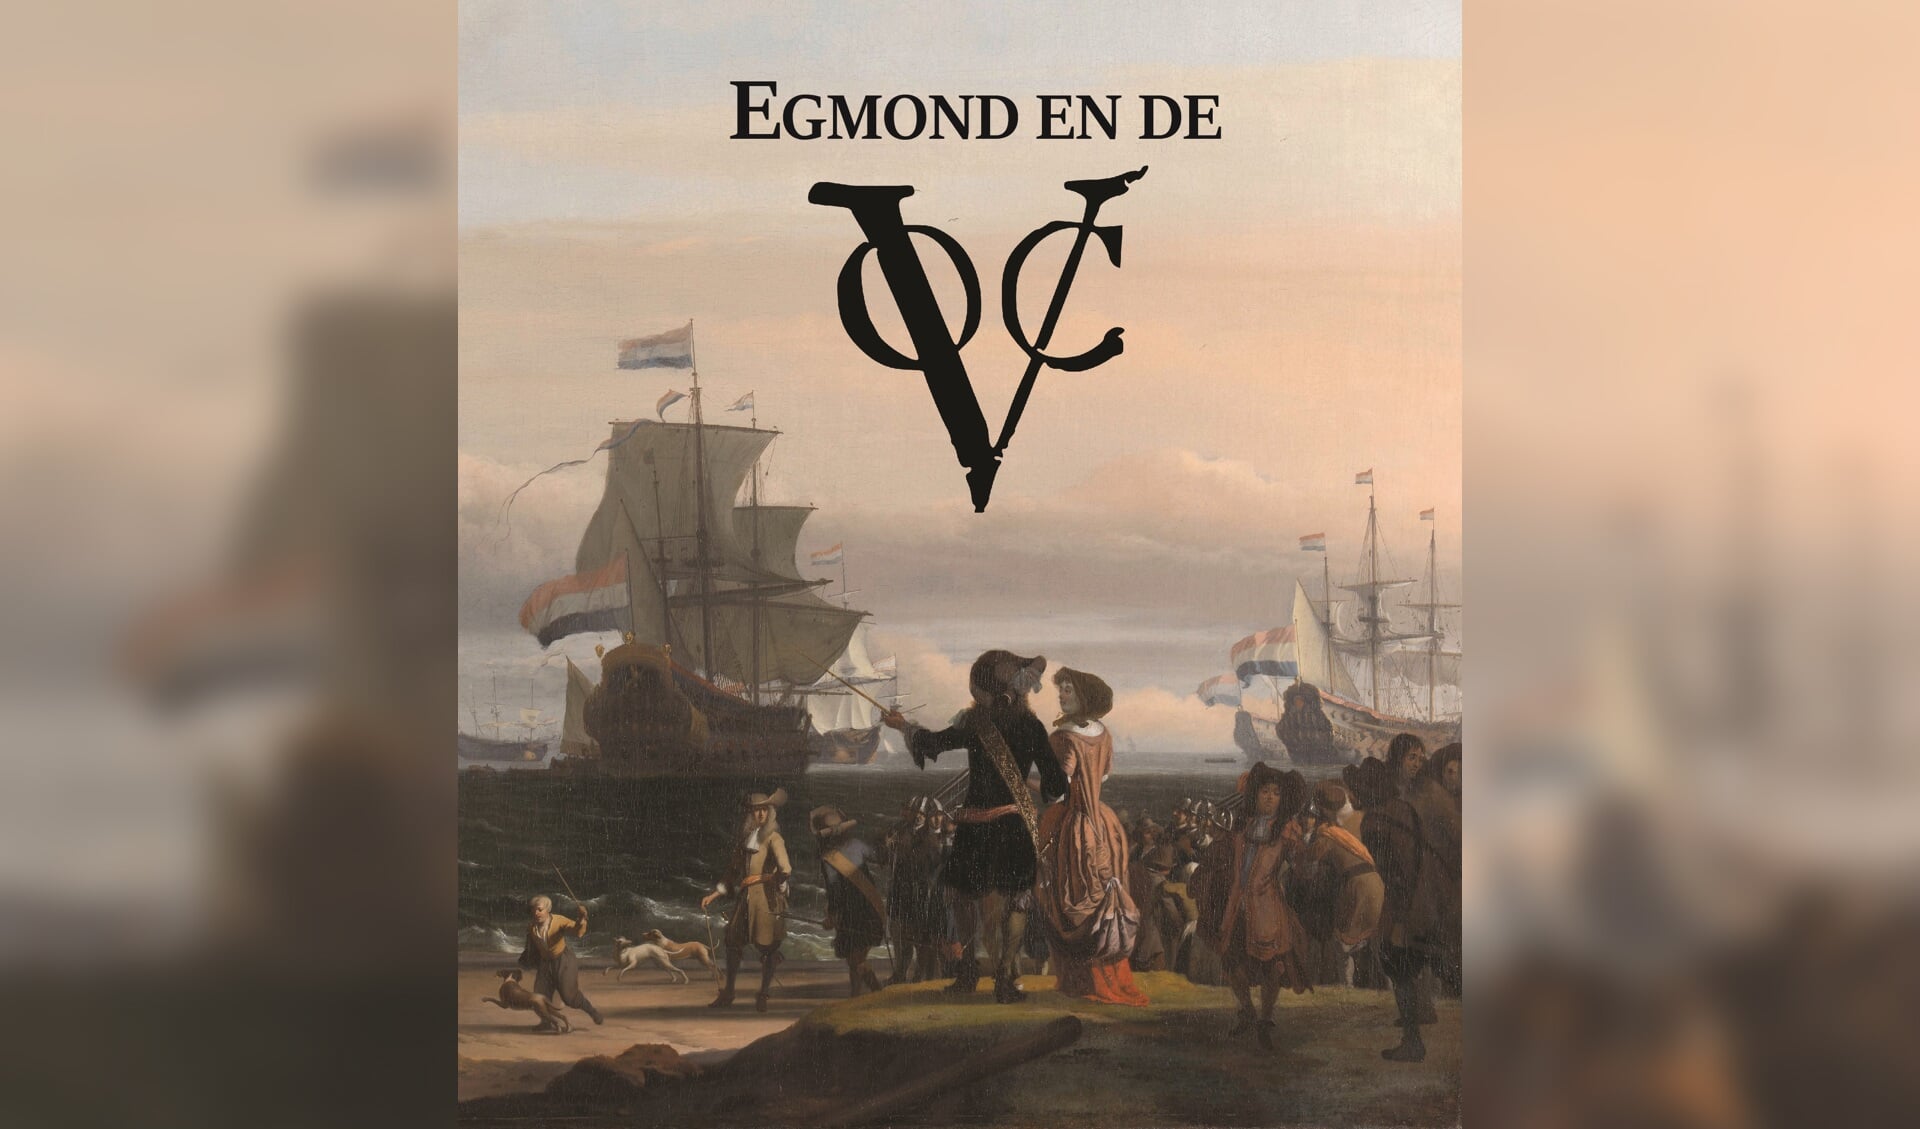 Het gratis boekje ‘Egmond en de VOC’ staat vol indrukwekkende verhalen en prachtige plaatjes.